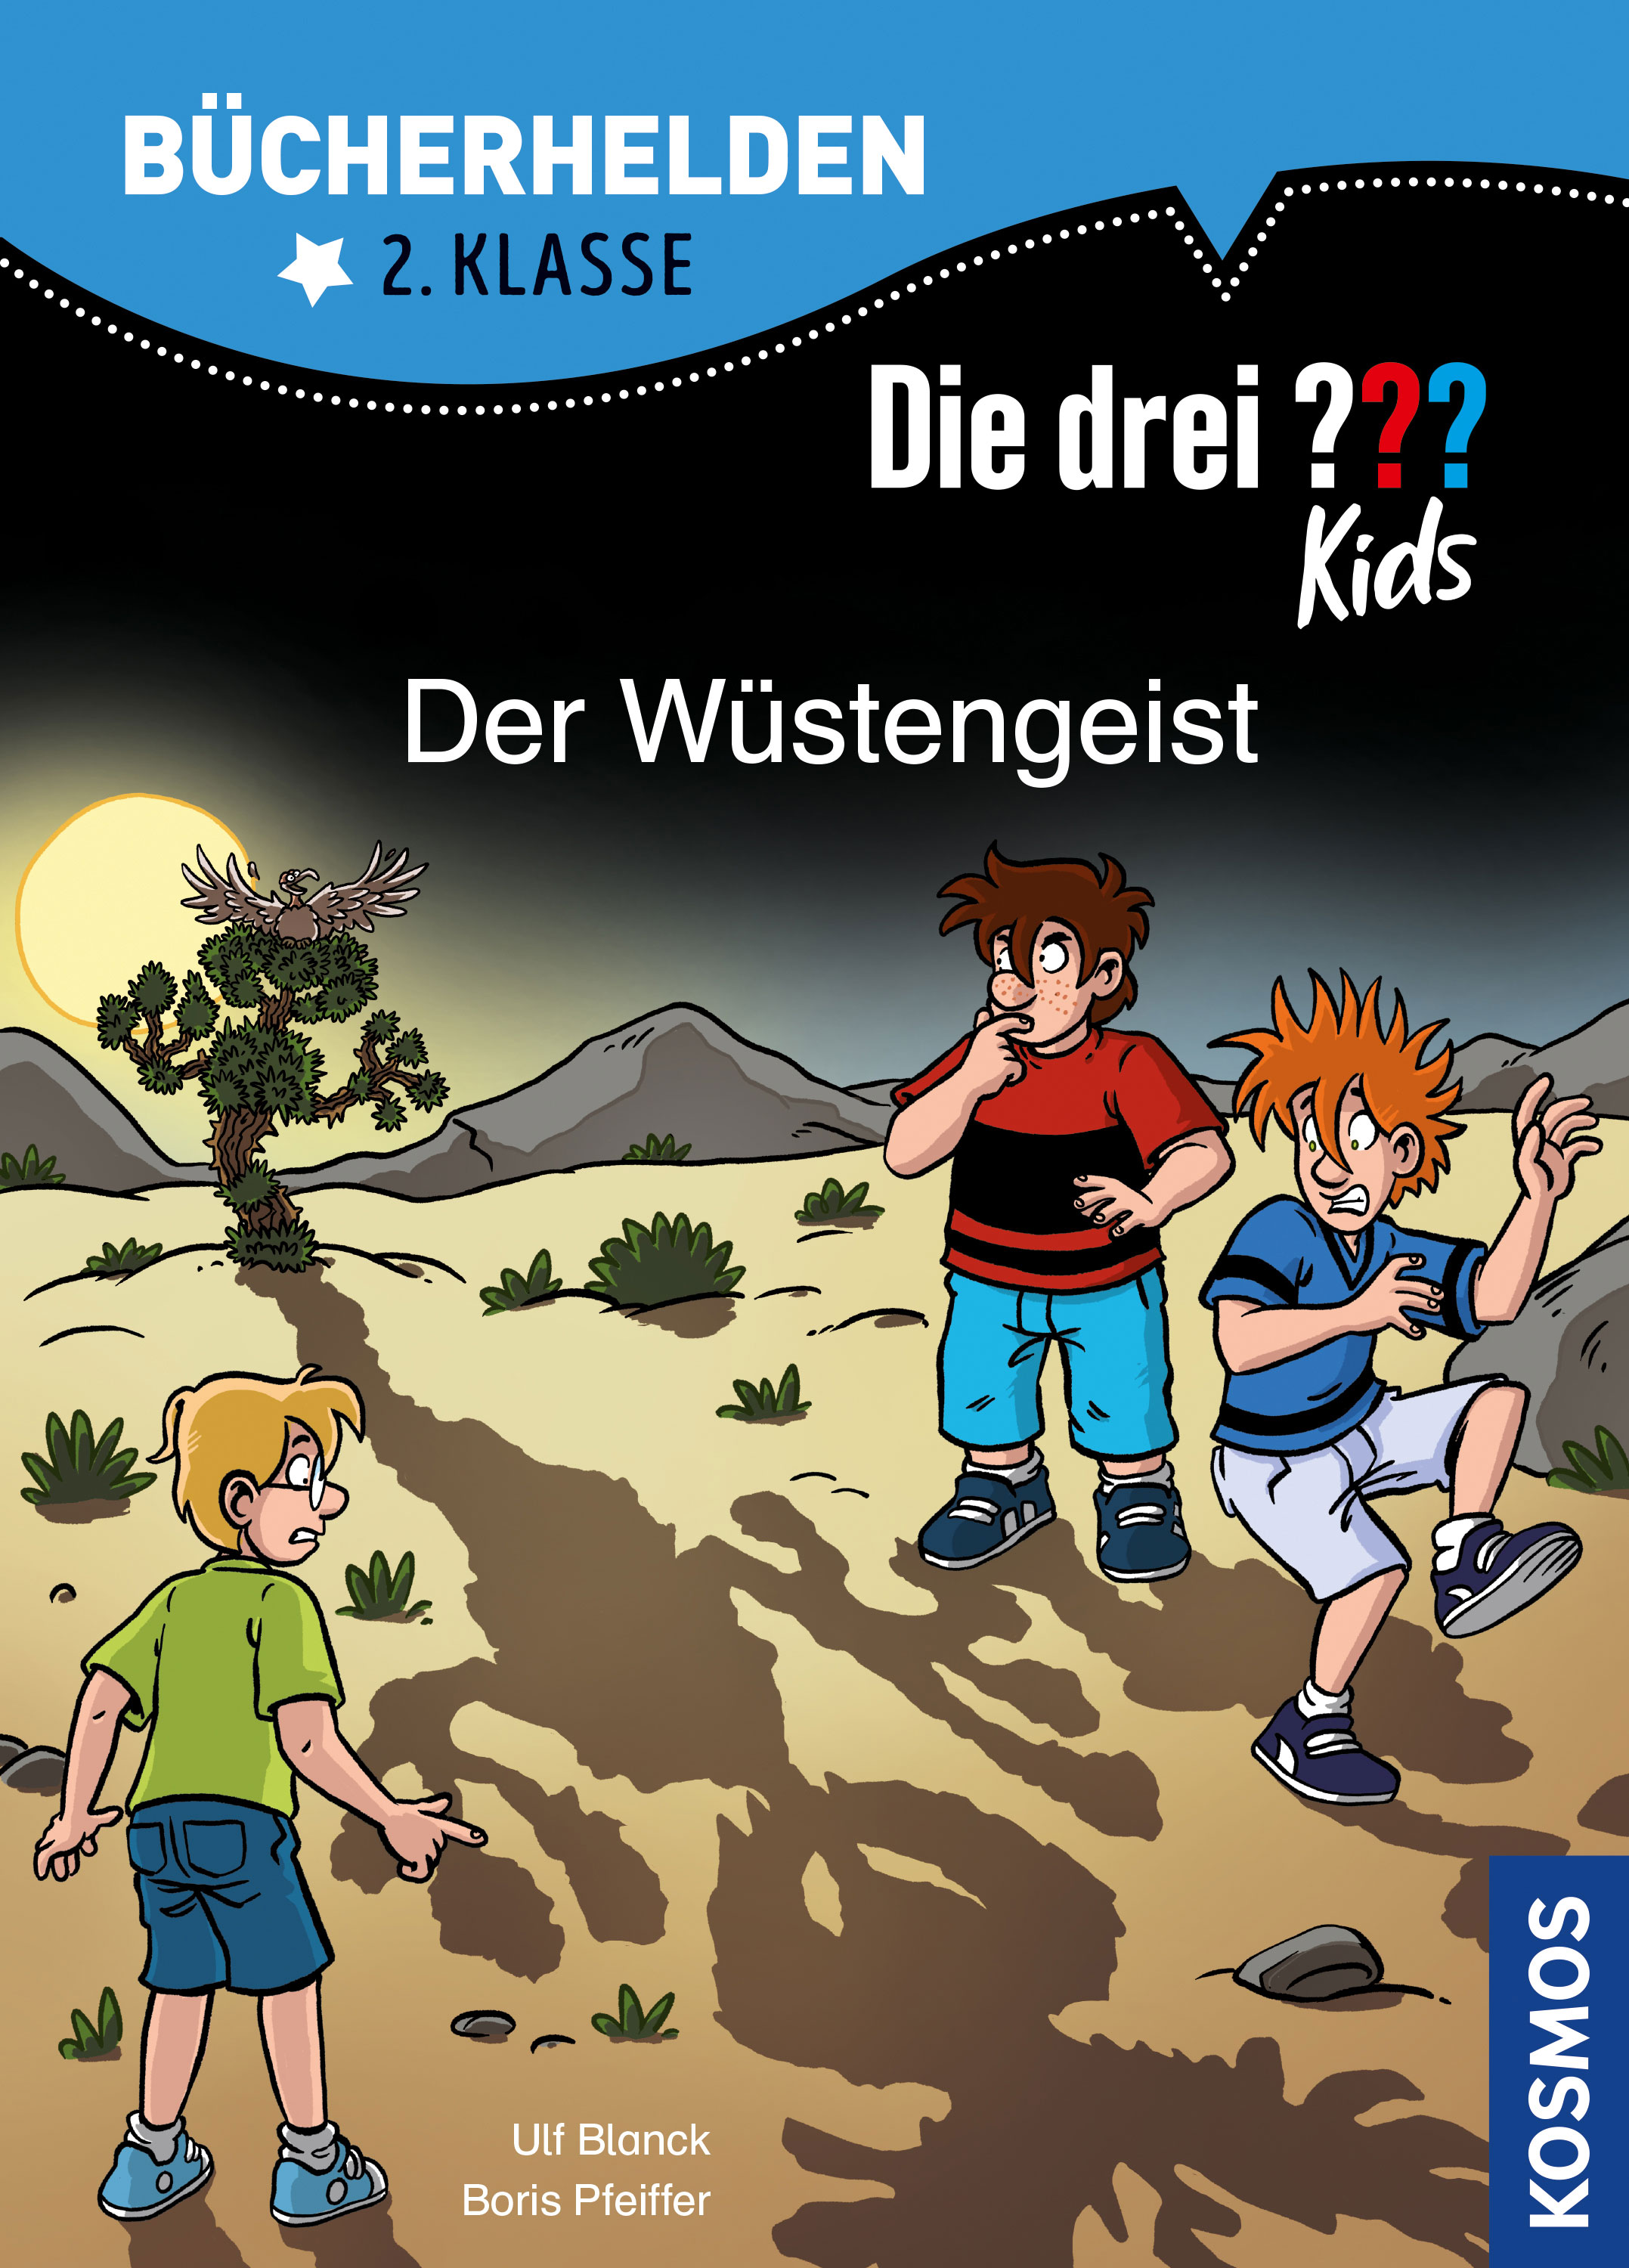 Die Drei ??? (Fragezeichen) Kids, Buch-Band 500: Der Wüstengeist (Bücherhelden 2.Klasse)